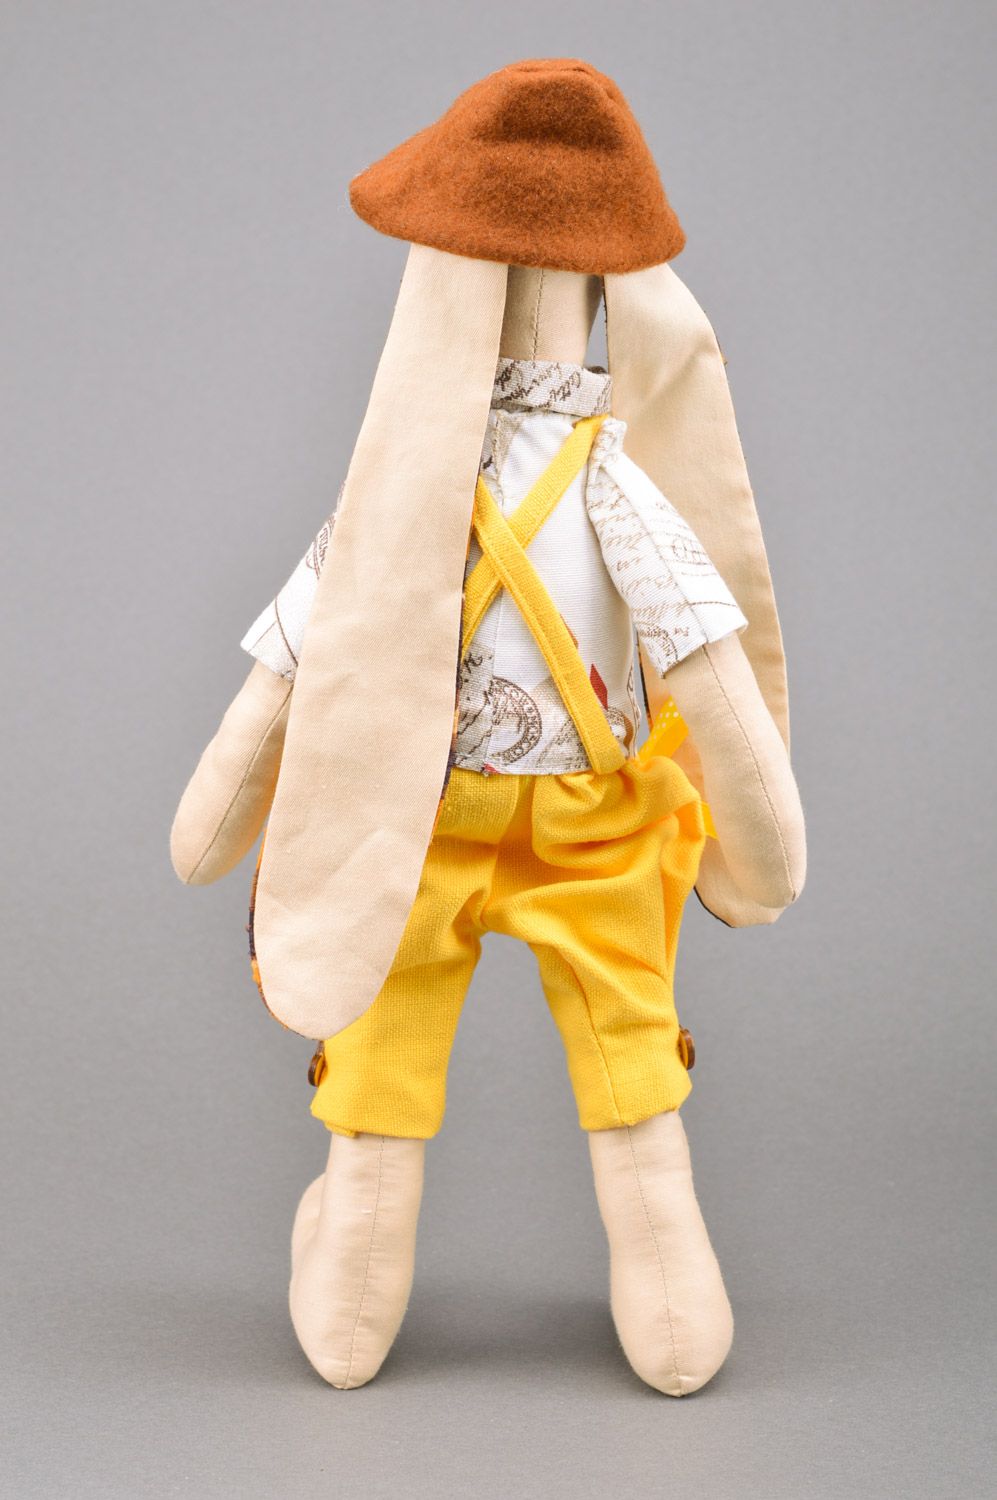 Juguete artesanal con forma de liebre de gobelino vestido de pantalones amarillos  foto 4